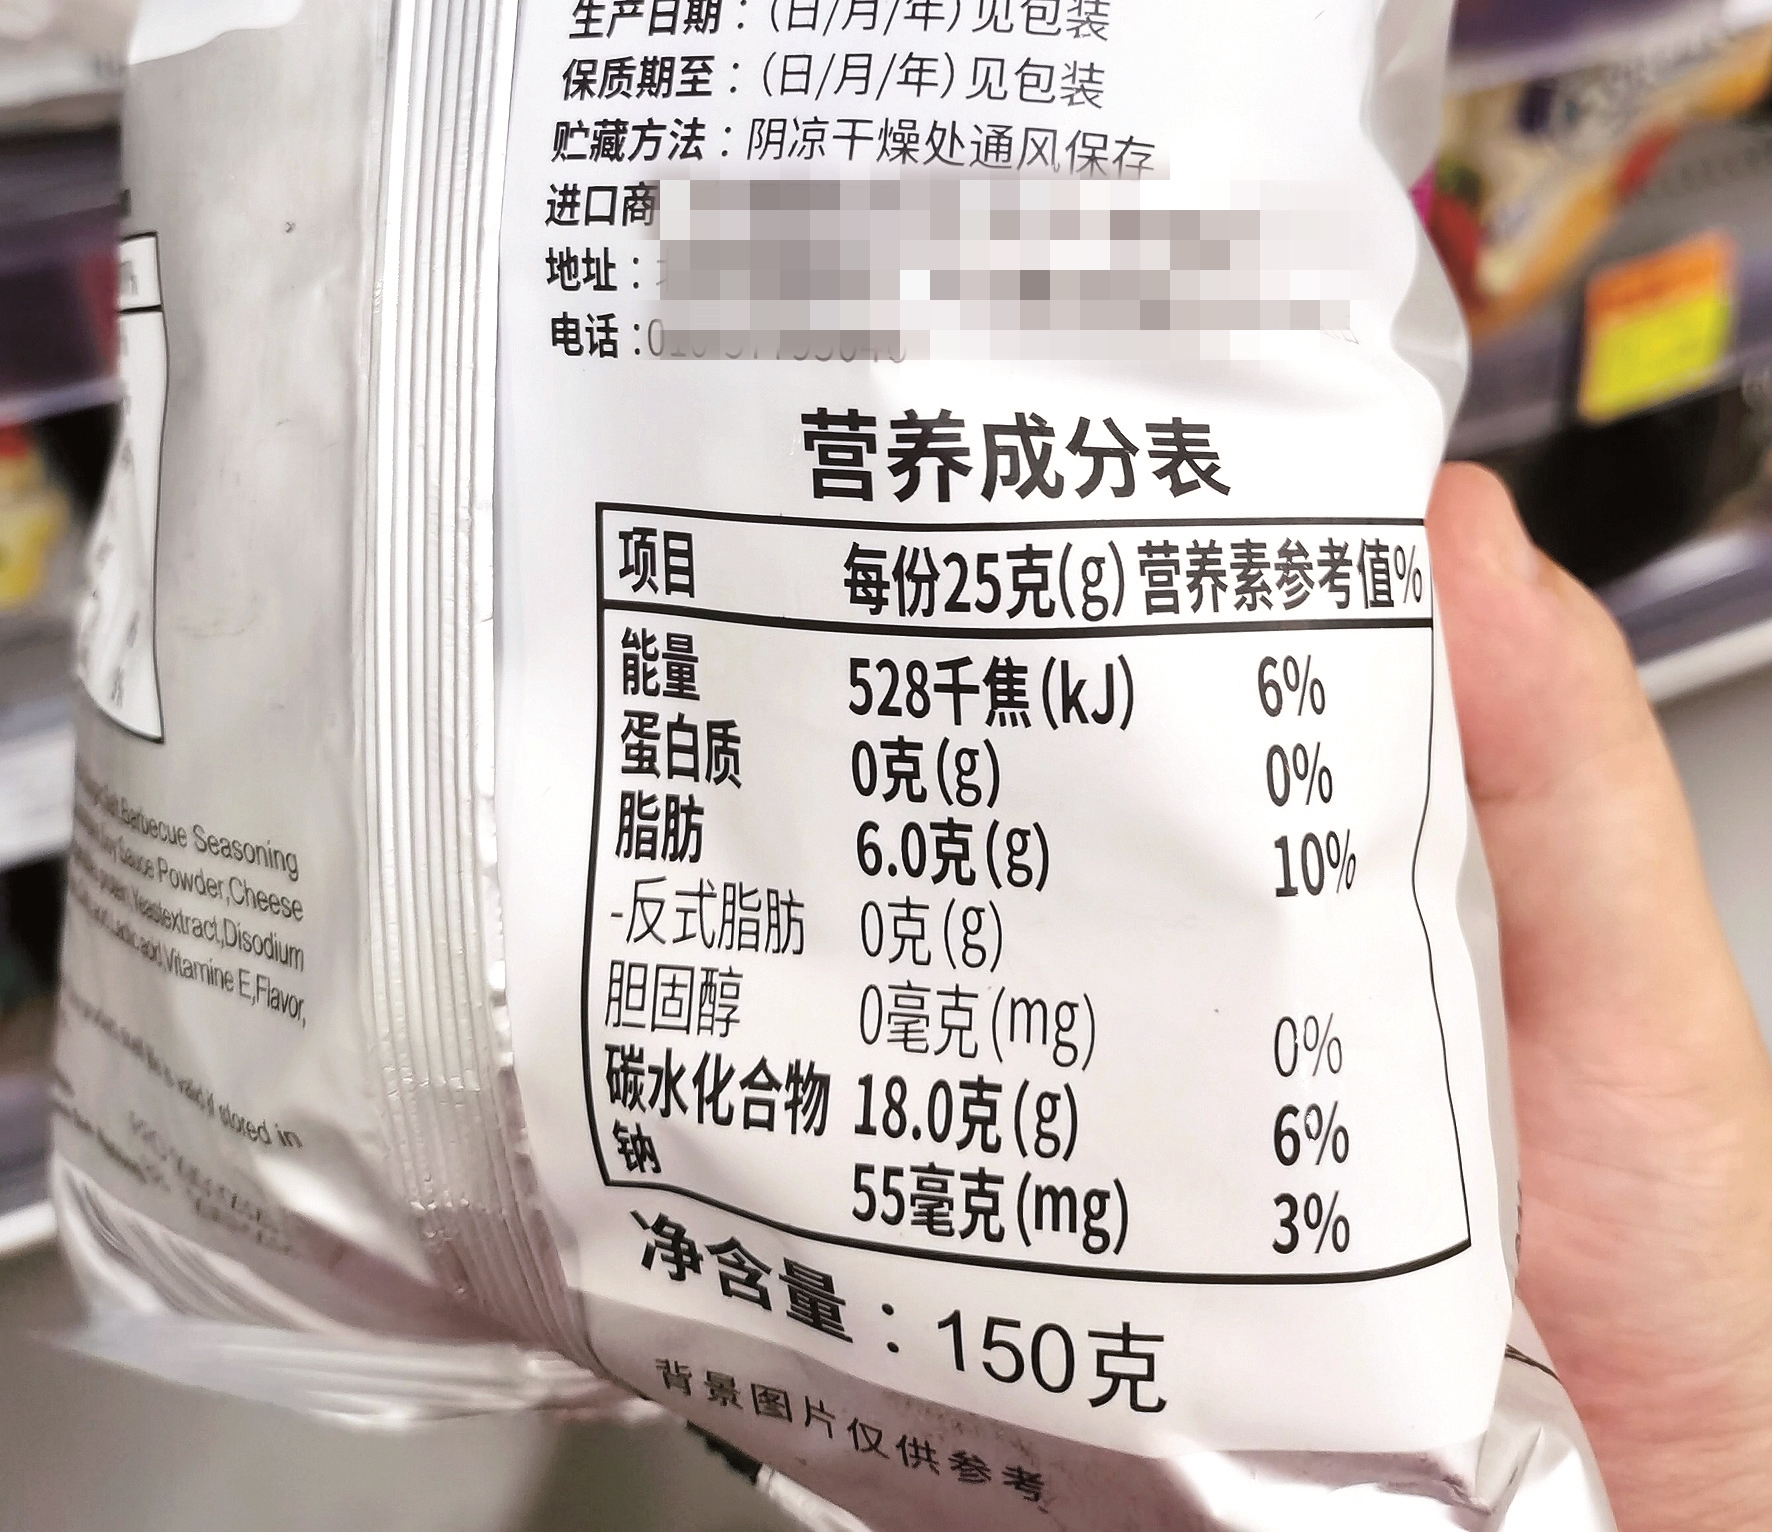 预包装食品营养成分标识标准差别大 100%果汁不一定是"原榨纯果汁"